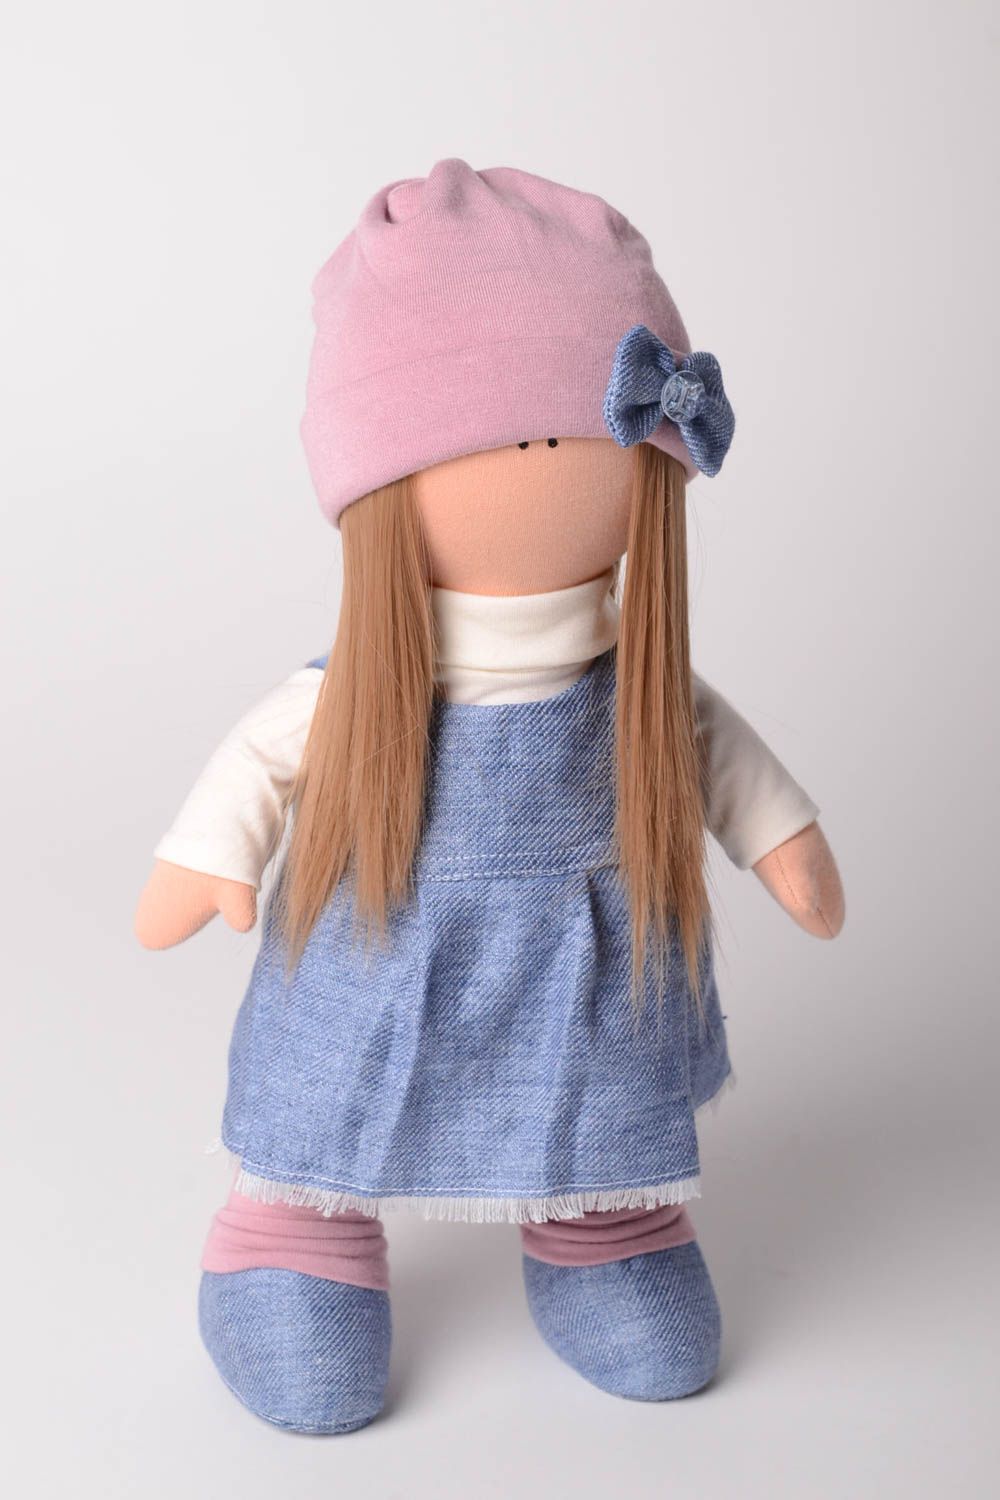 Кукла ручной работы кукла из ткани мягкая кукла трикотажная в джинсовом платье фото 1